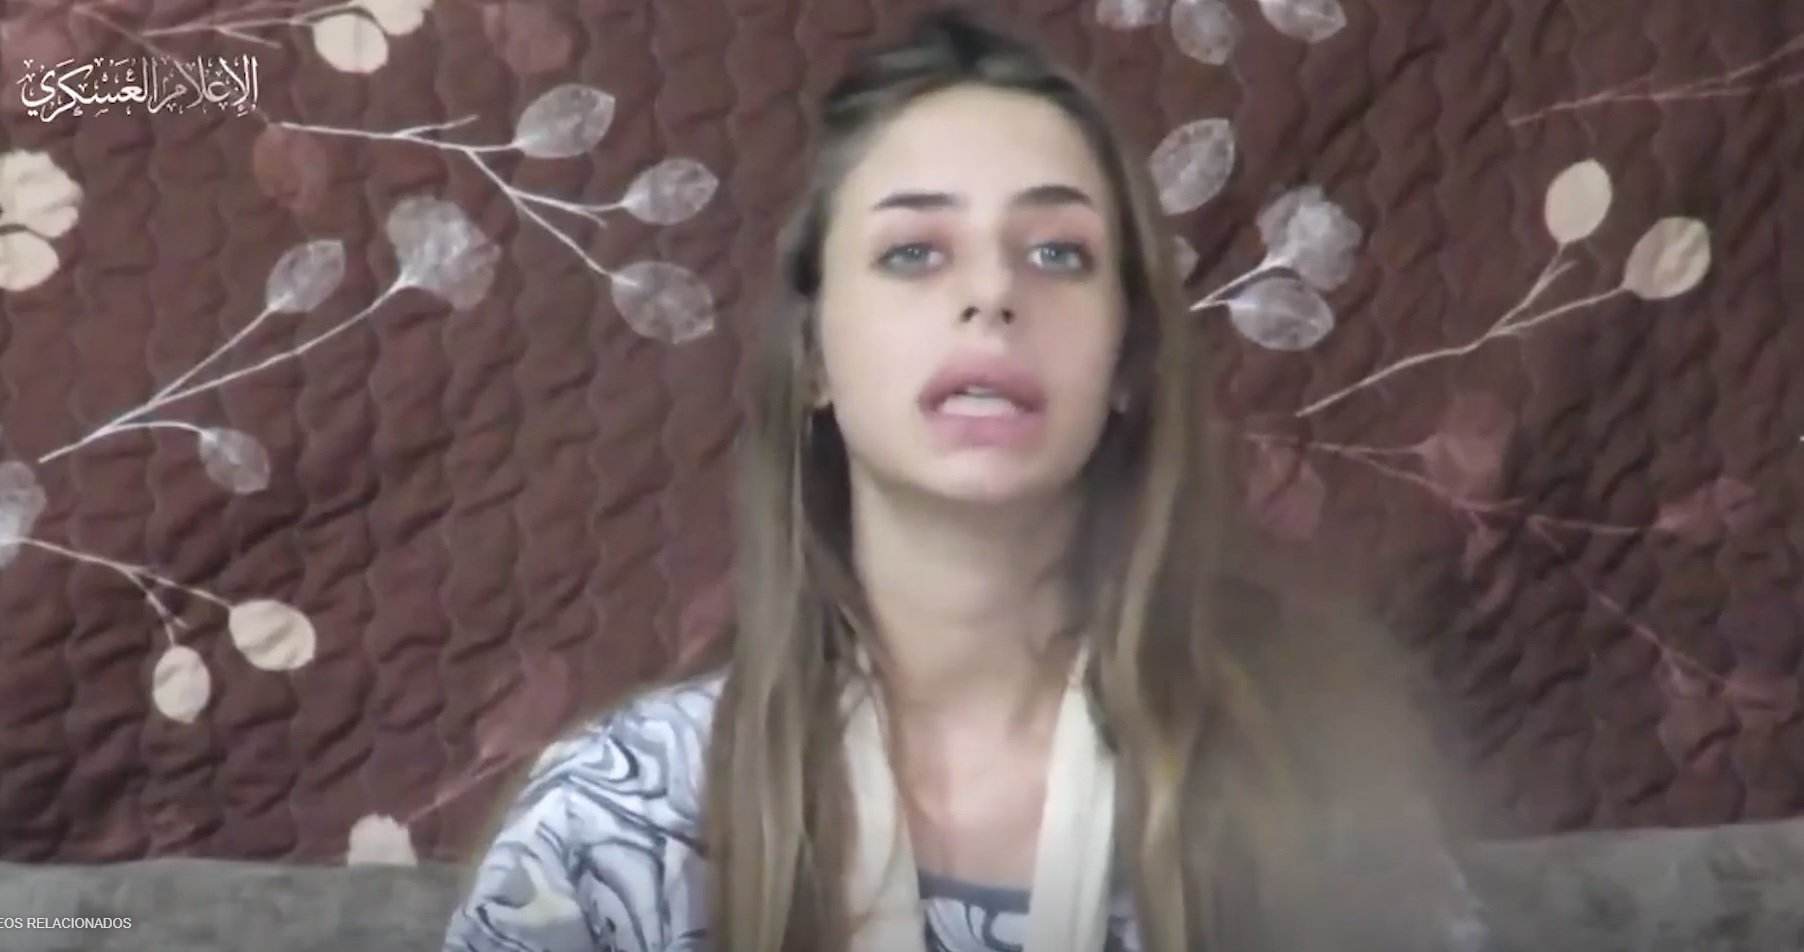 Hamás publica un vídeo de Mia Schem, la rehén israelí: "Por favor, sacadme de aquí"